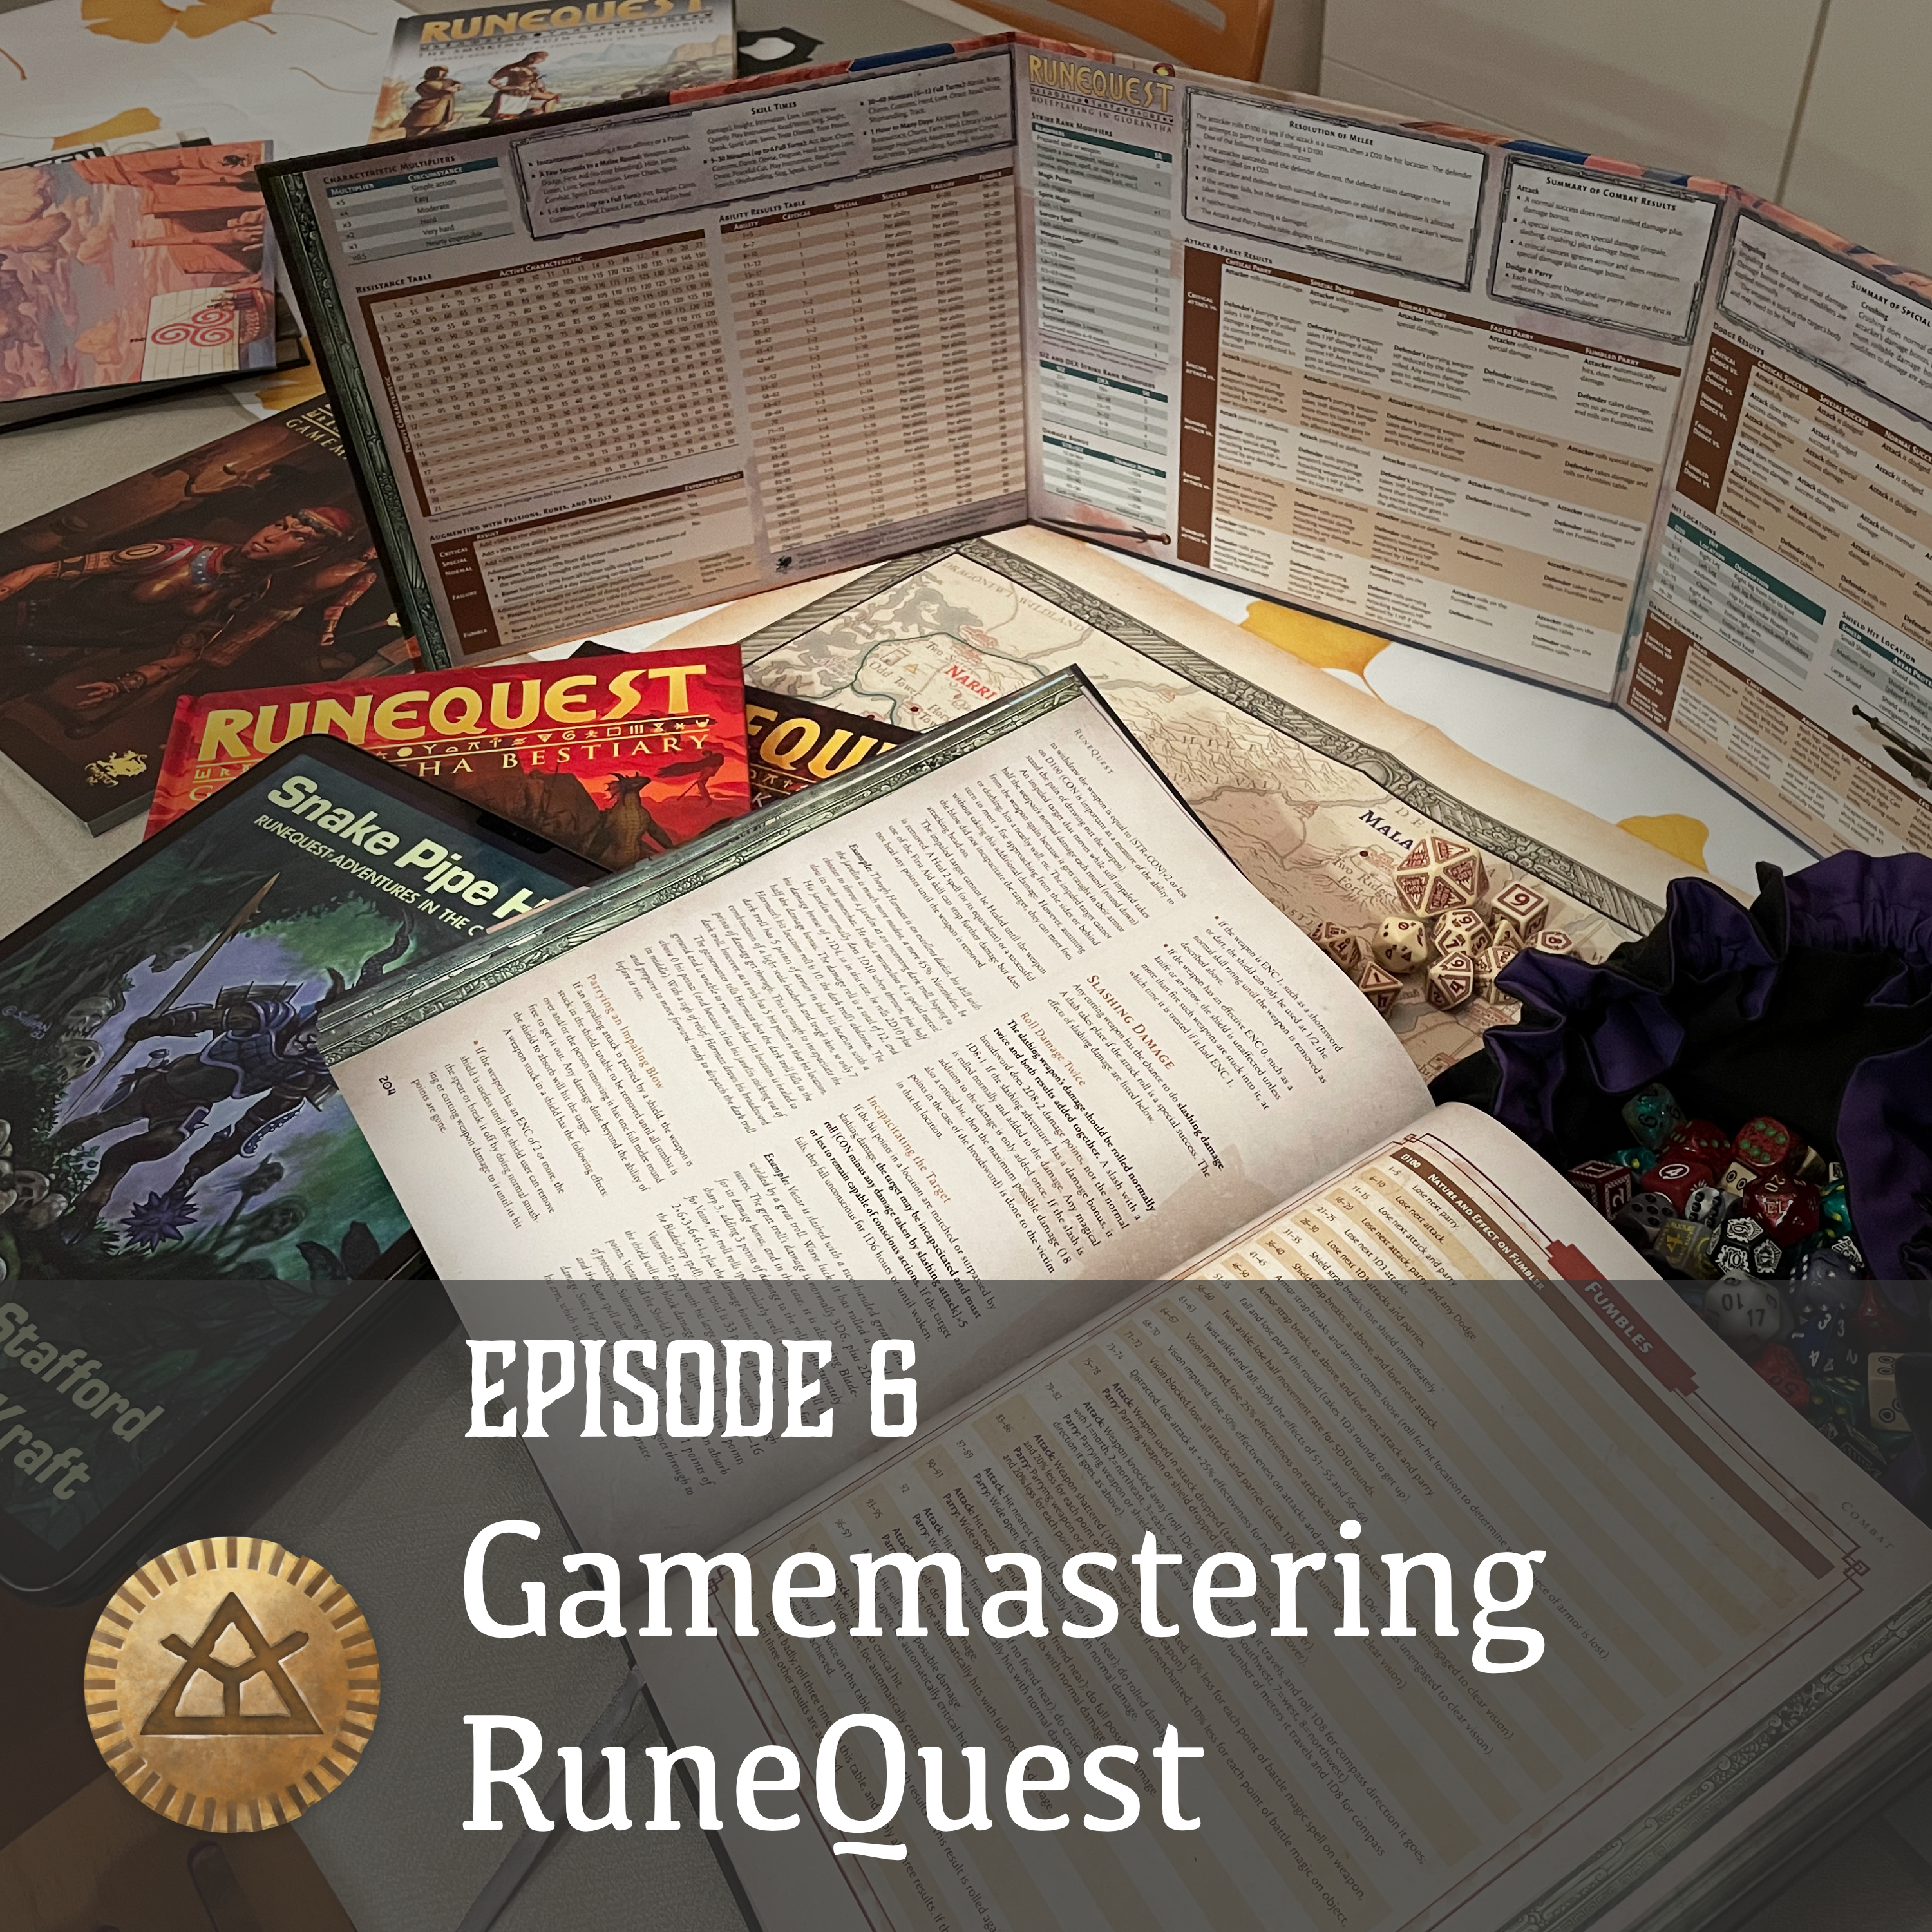 Episode 6: Gamemastering RuneQuest